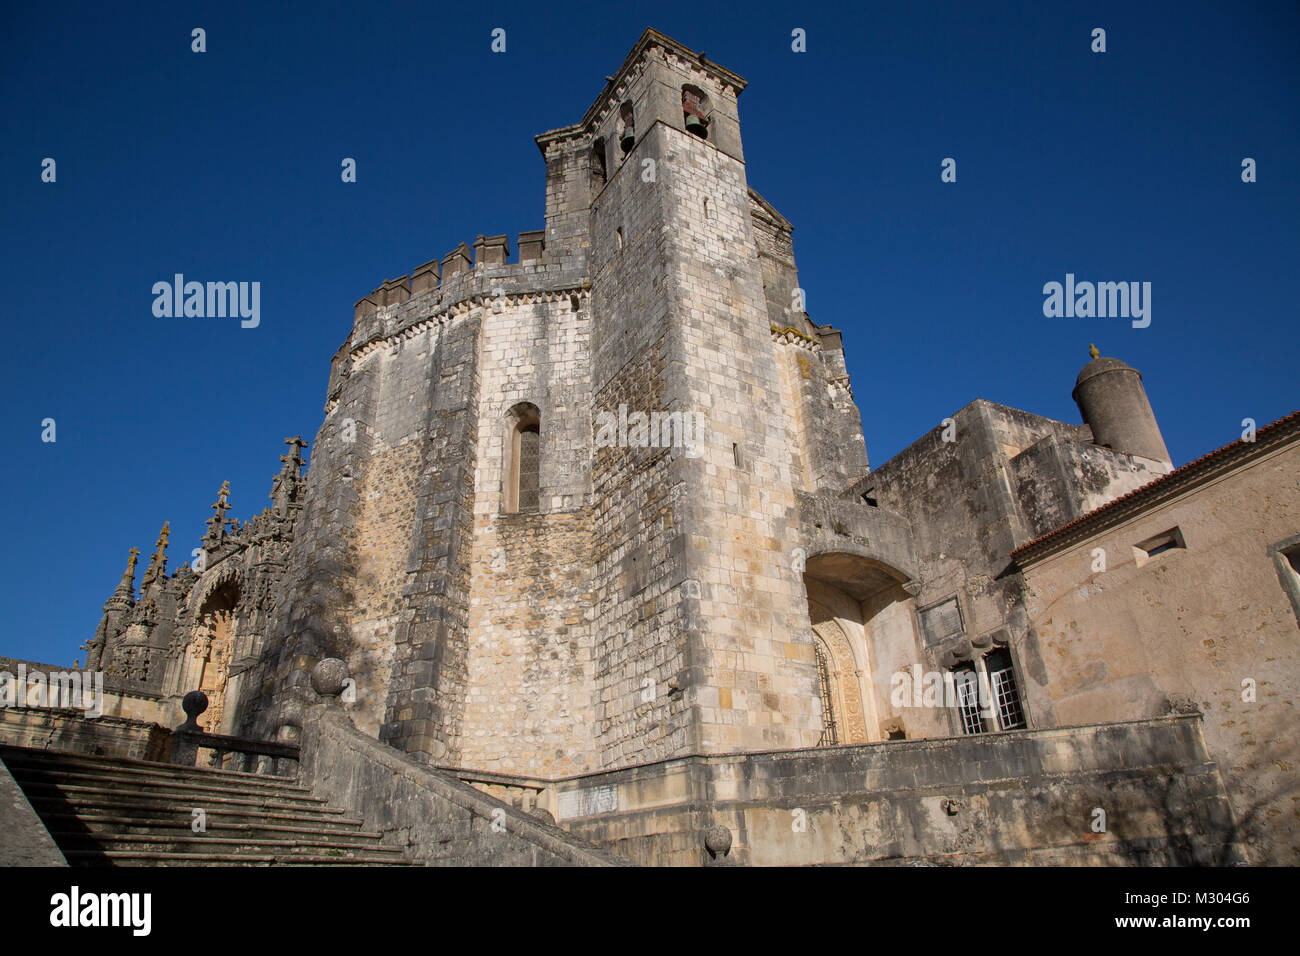 Convento de Cristo; Tomar; Portugal Stock Photo